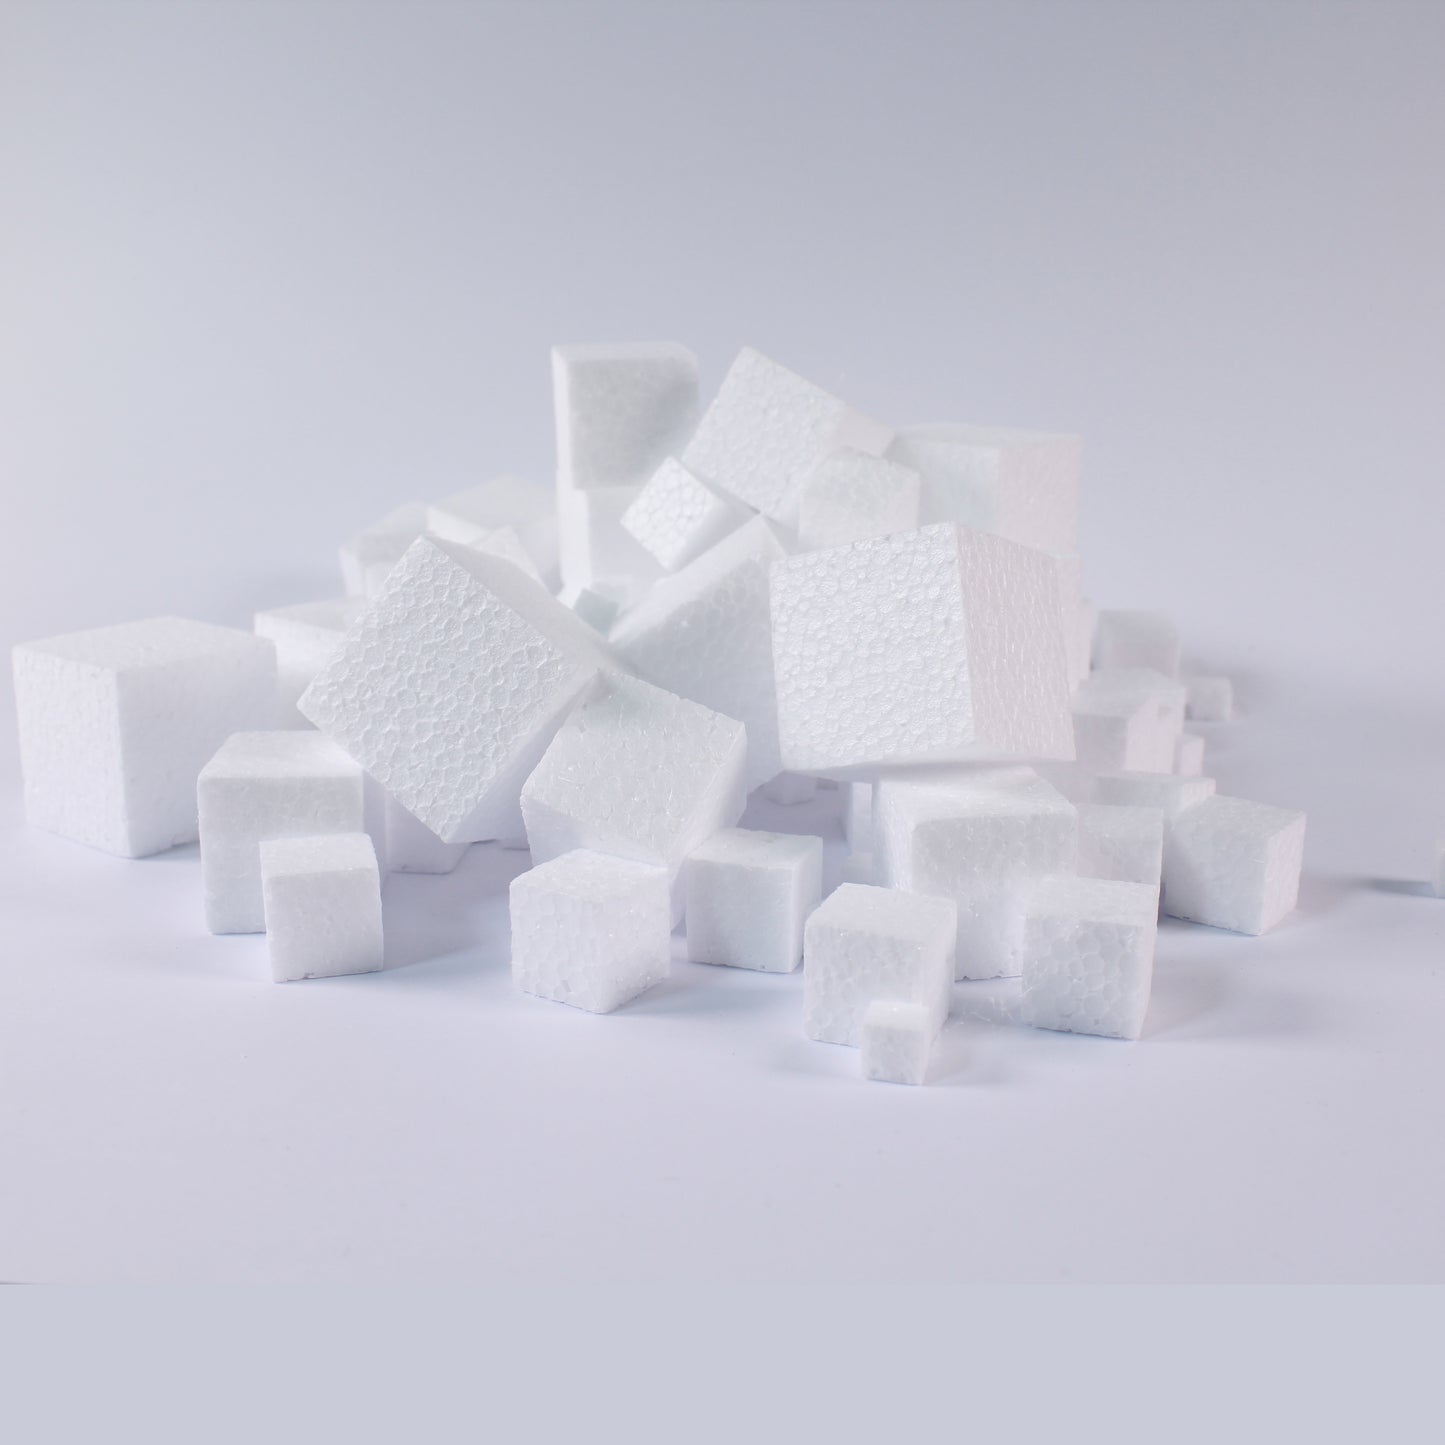 Polystyrene cubes